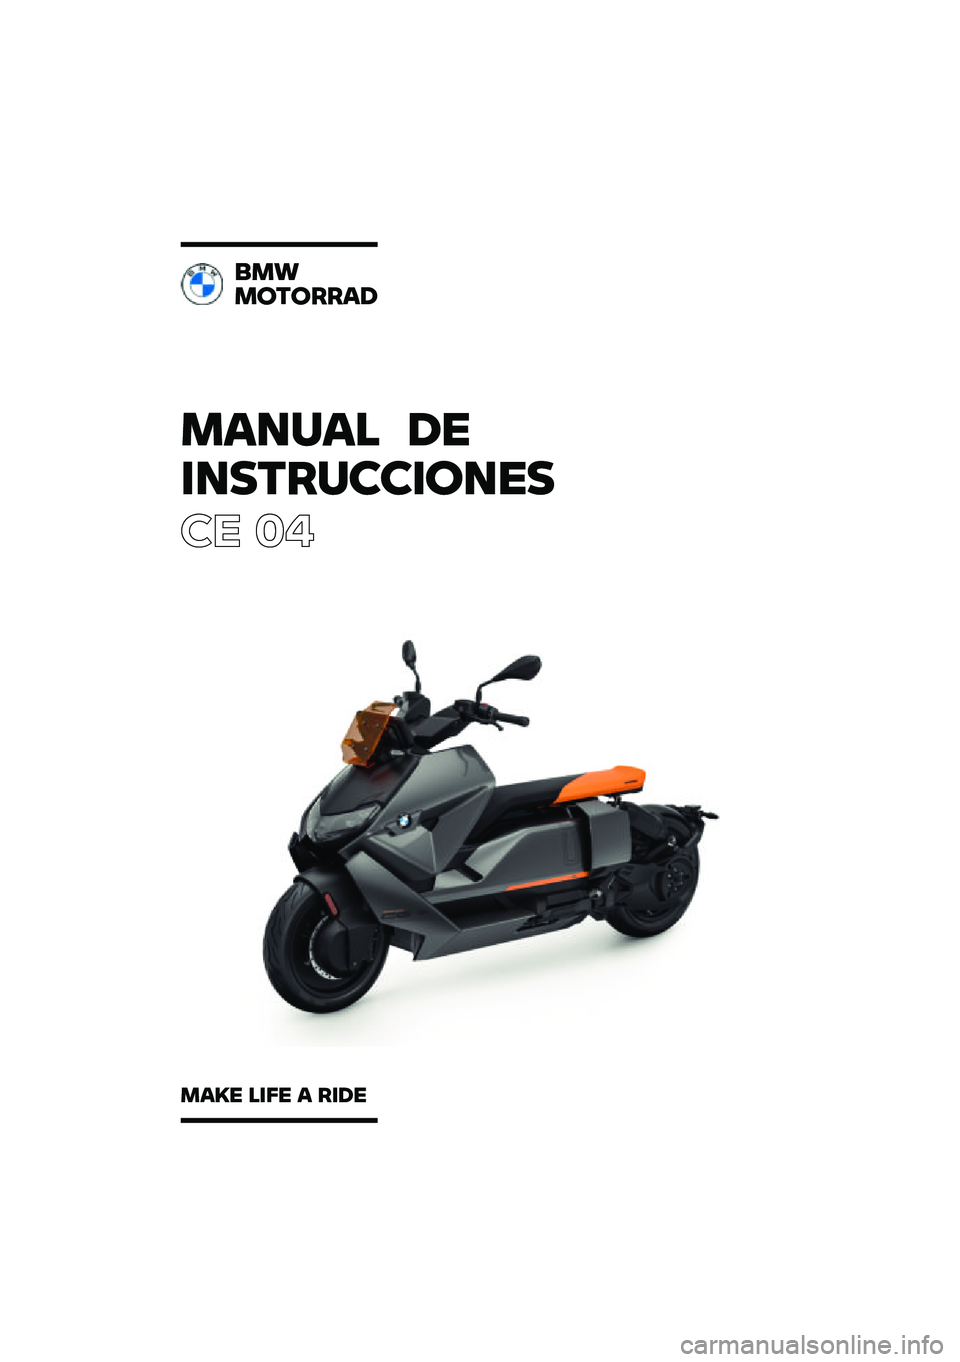 BMW MOTORRAD CE 04 2021  Manual de instrucciones (in Spanish) ������ ��\b
�	��
��\f��
�
�	���\b�

�� ��
���
�����\f�\f��
����\b ��	��\b � �\f�	��\b 